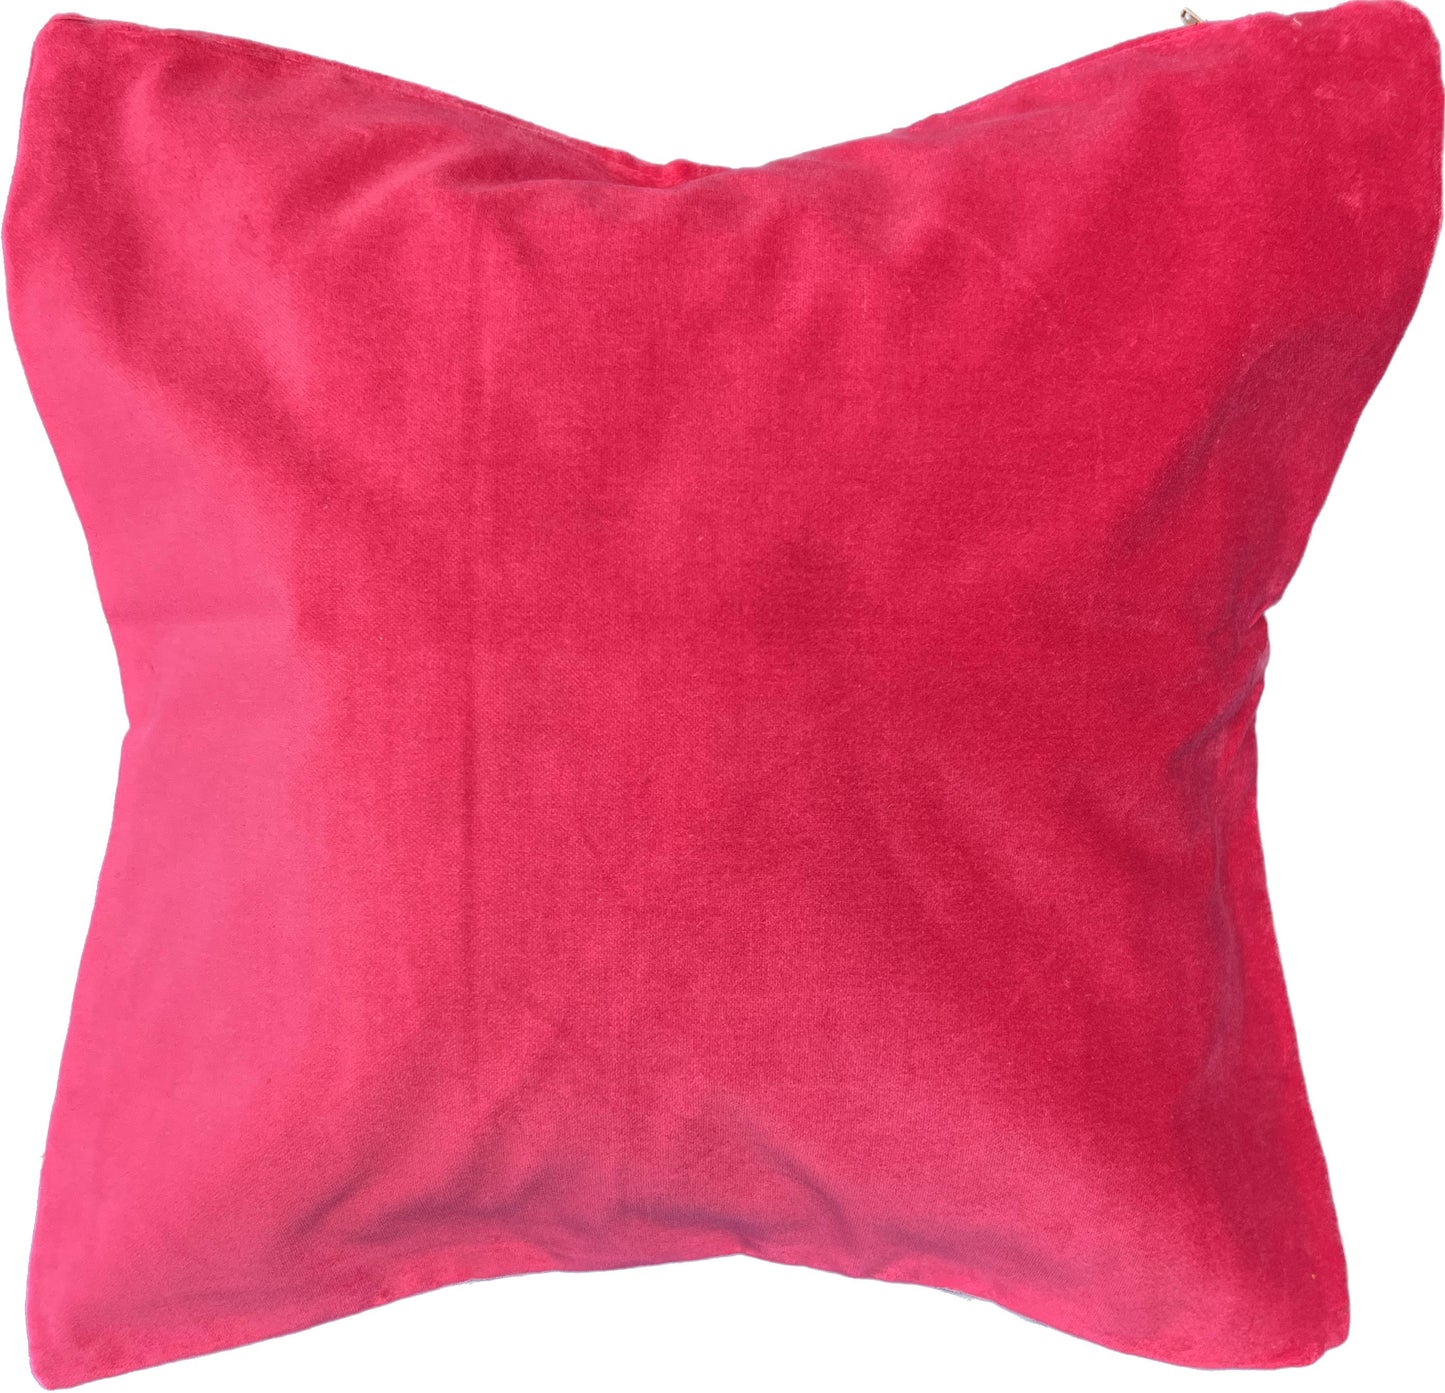 16"x16" Pink Velvet Pillow Cover